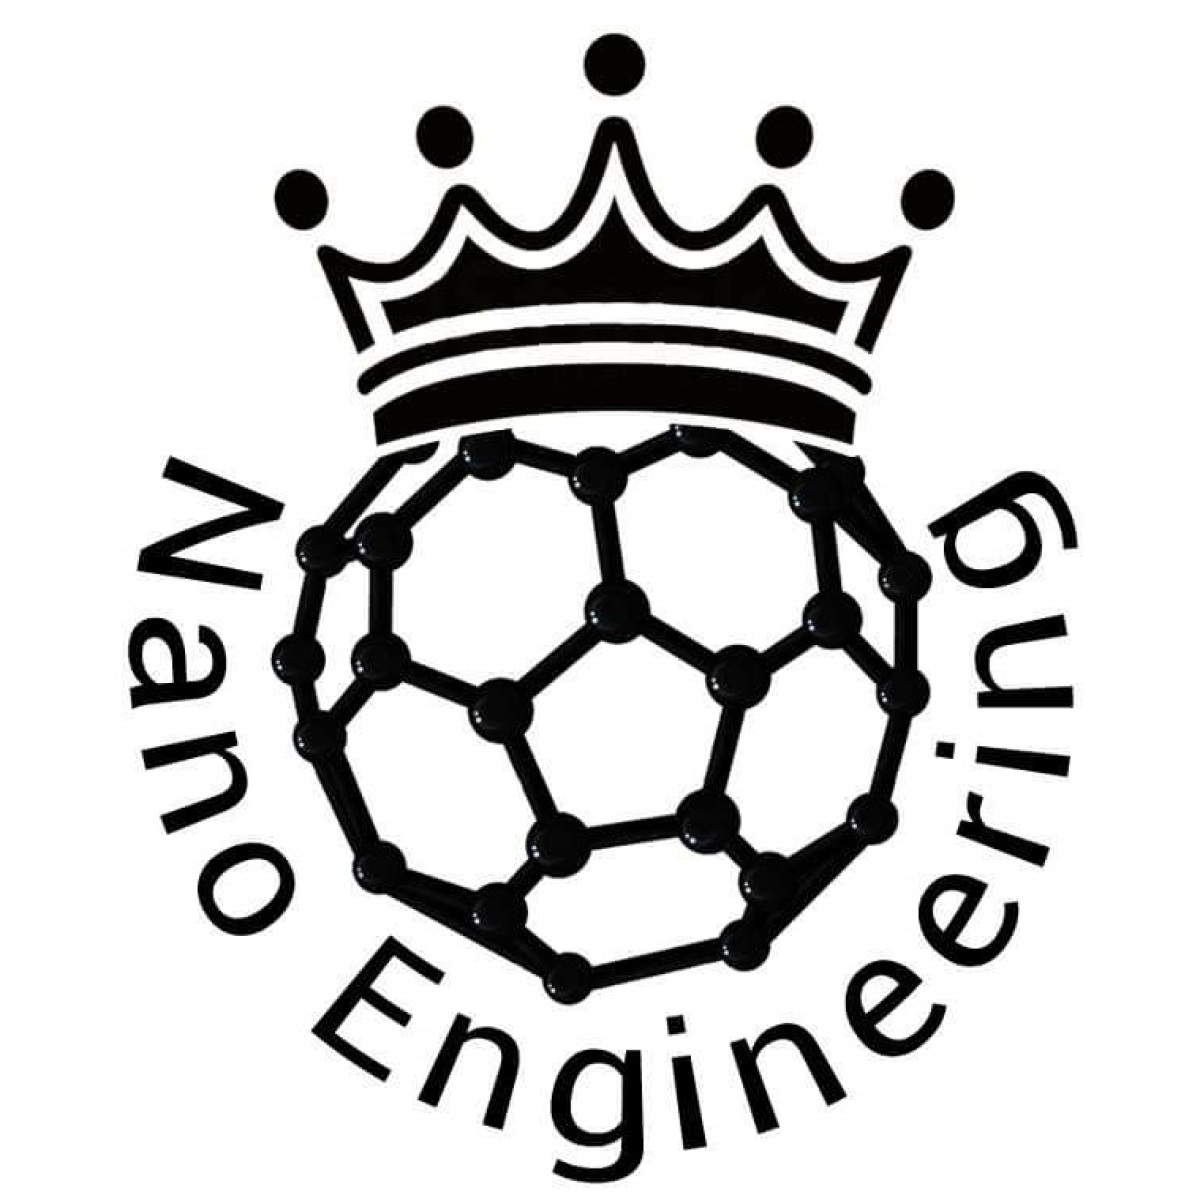 Ein Bild von einem C60 Fulleren mit einer aufgesetzten Krone und unterstehendem gekrümmten Text "NanoEngineering".